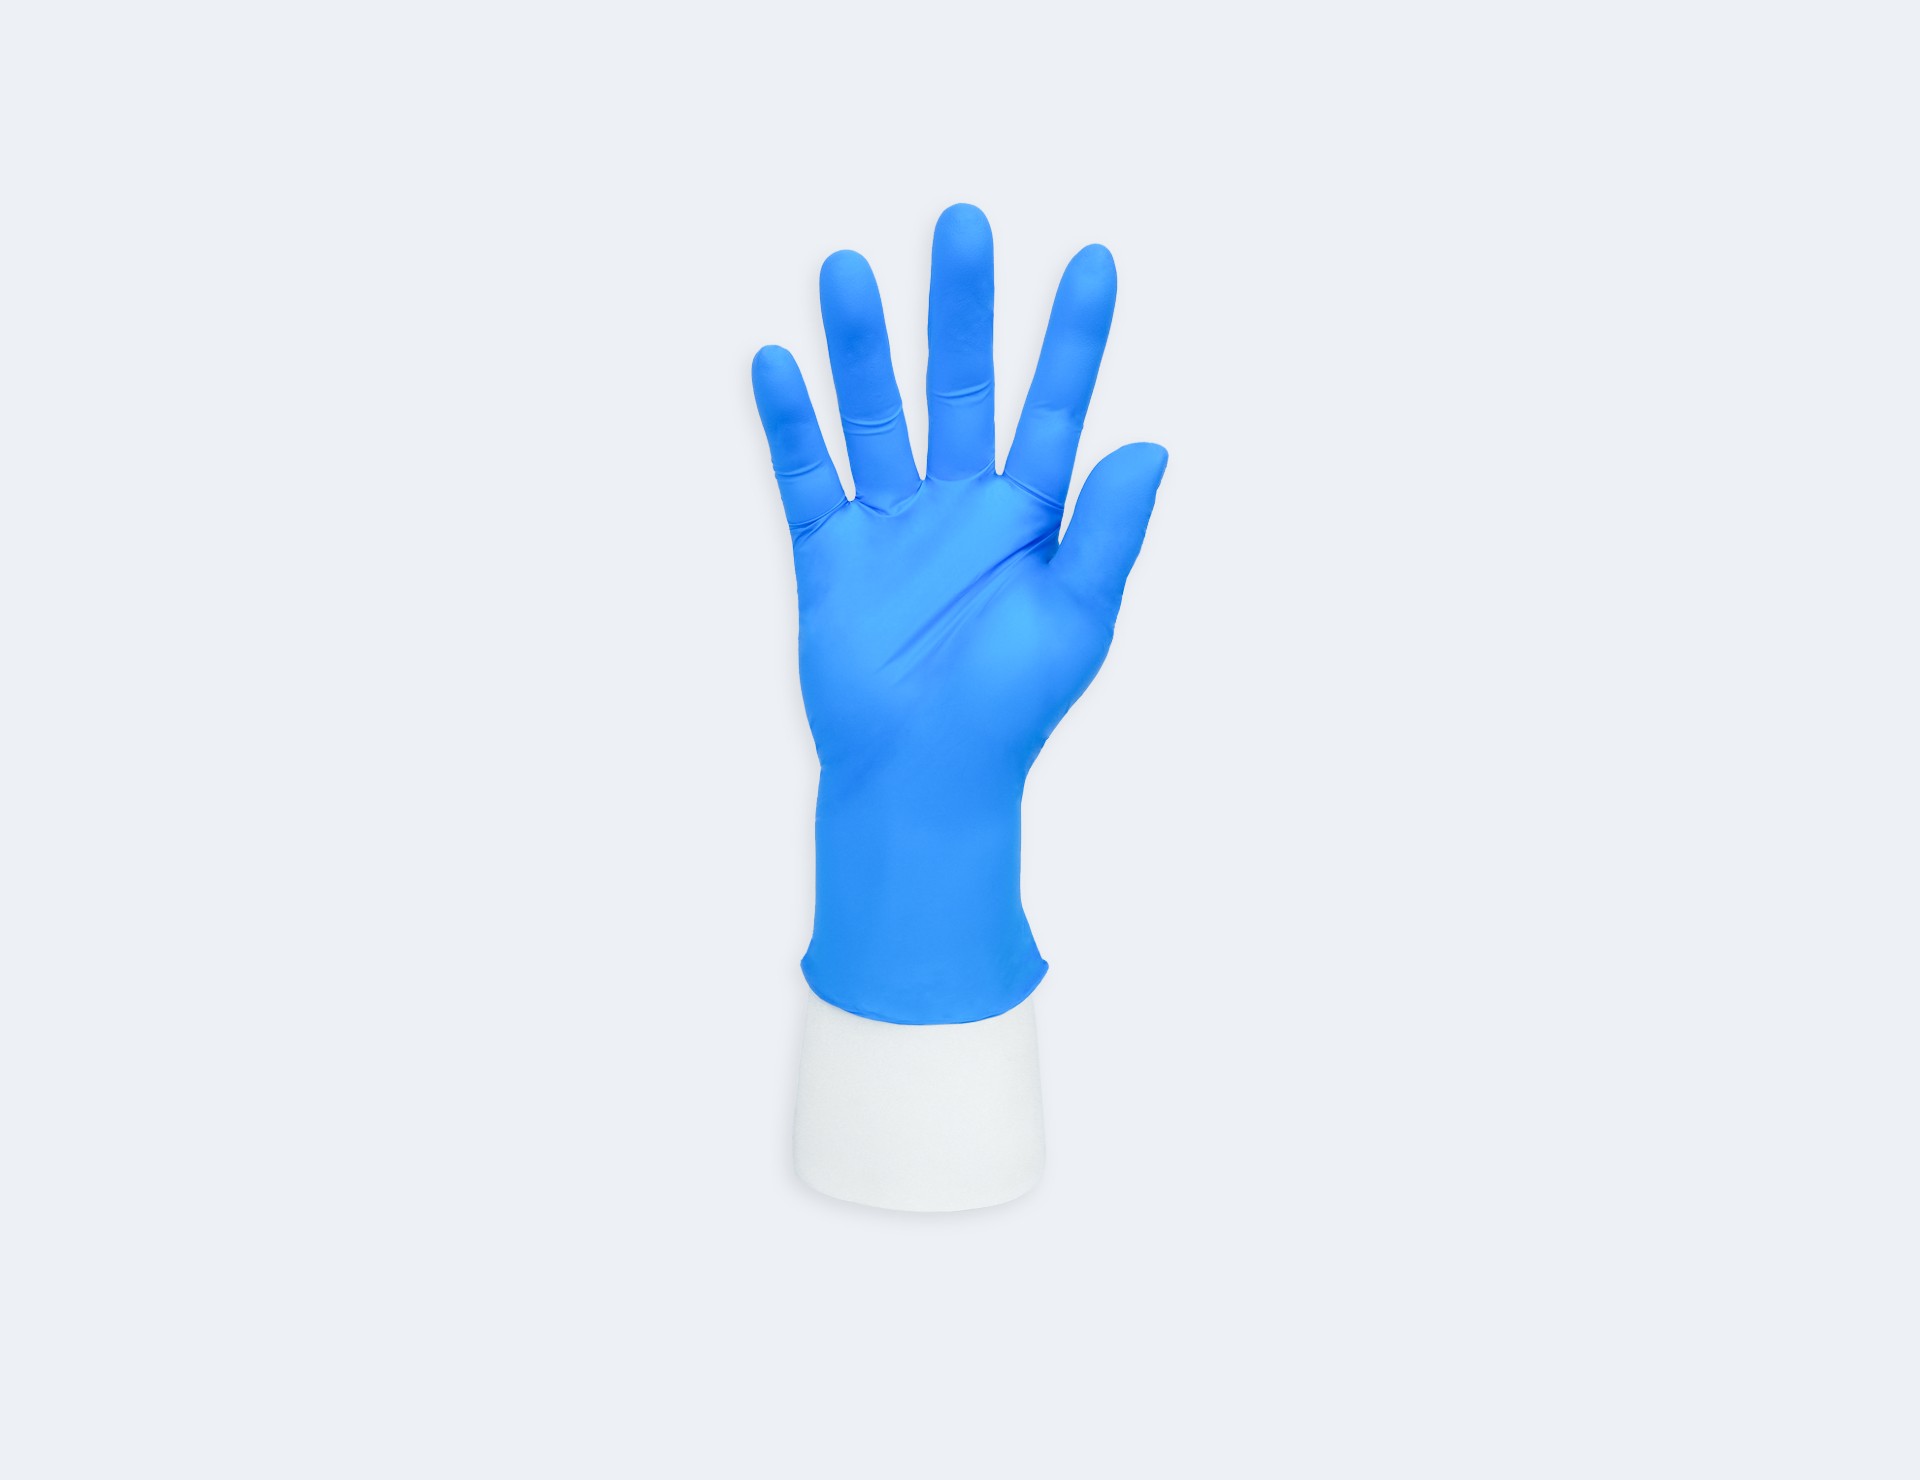 INTCO Medical Advancare Nitrile Exam Gloves（nitrile glove）